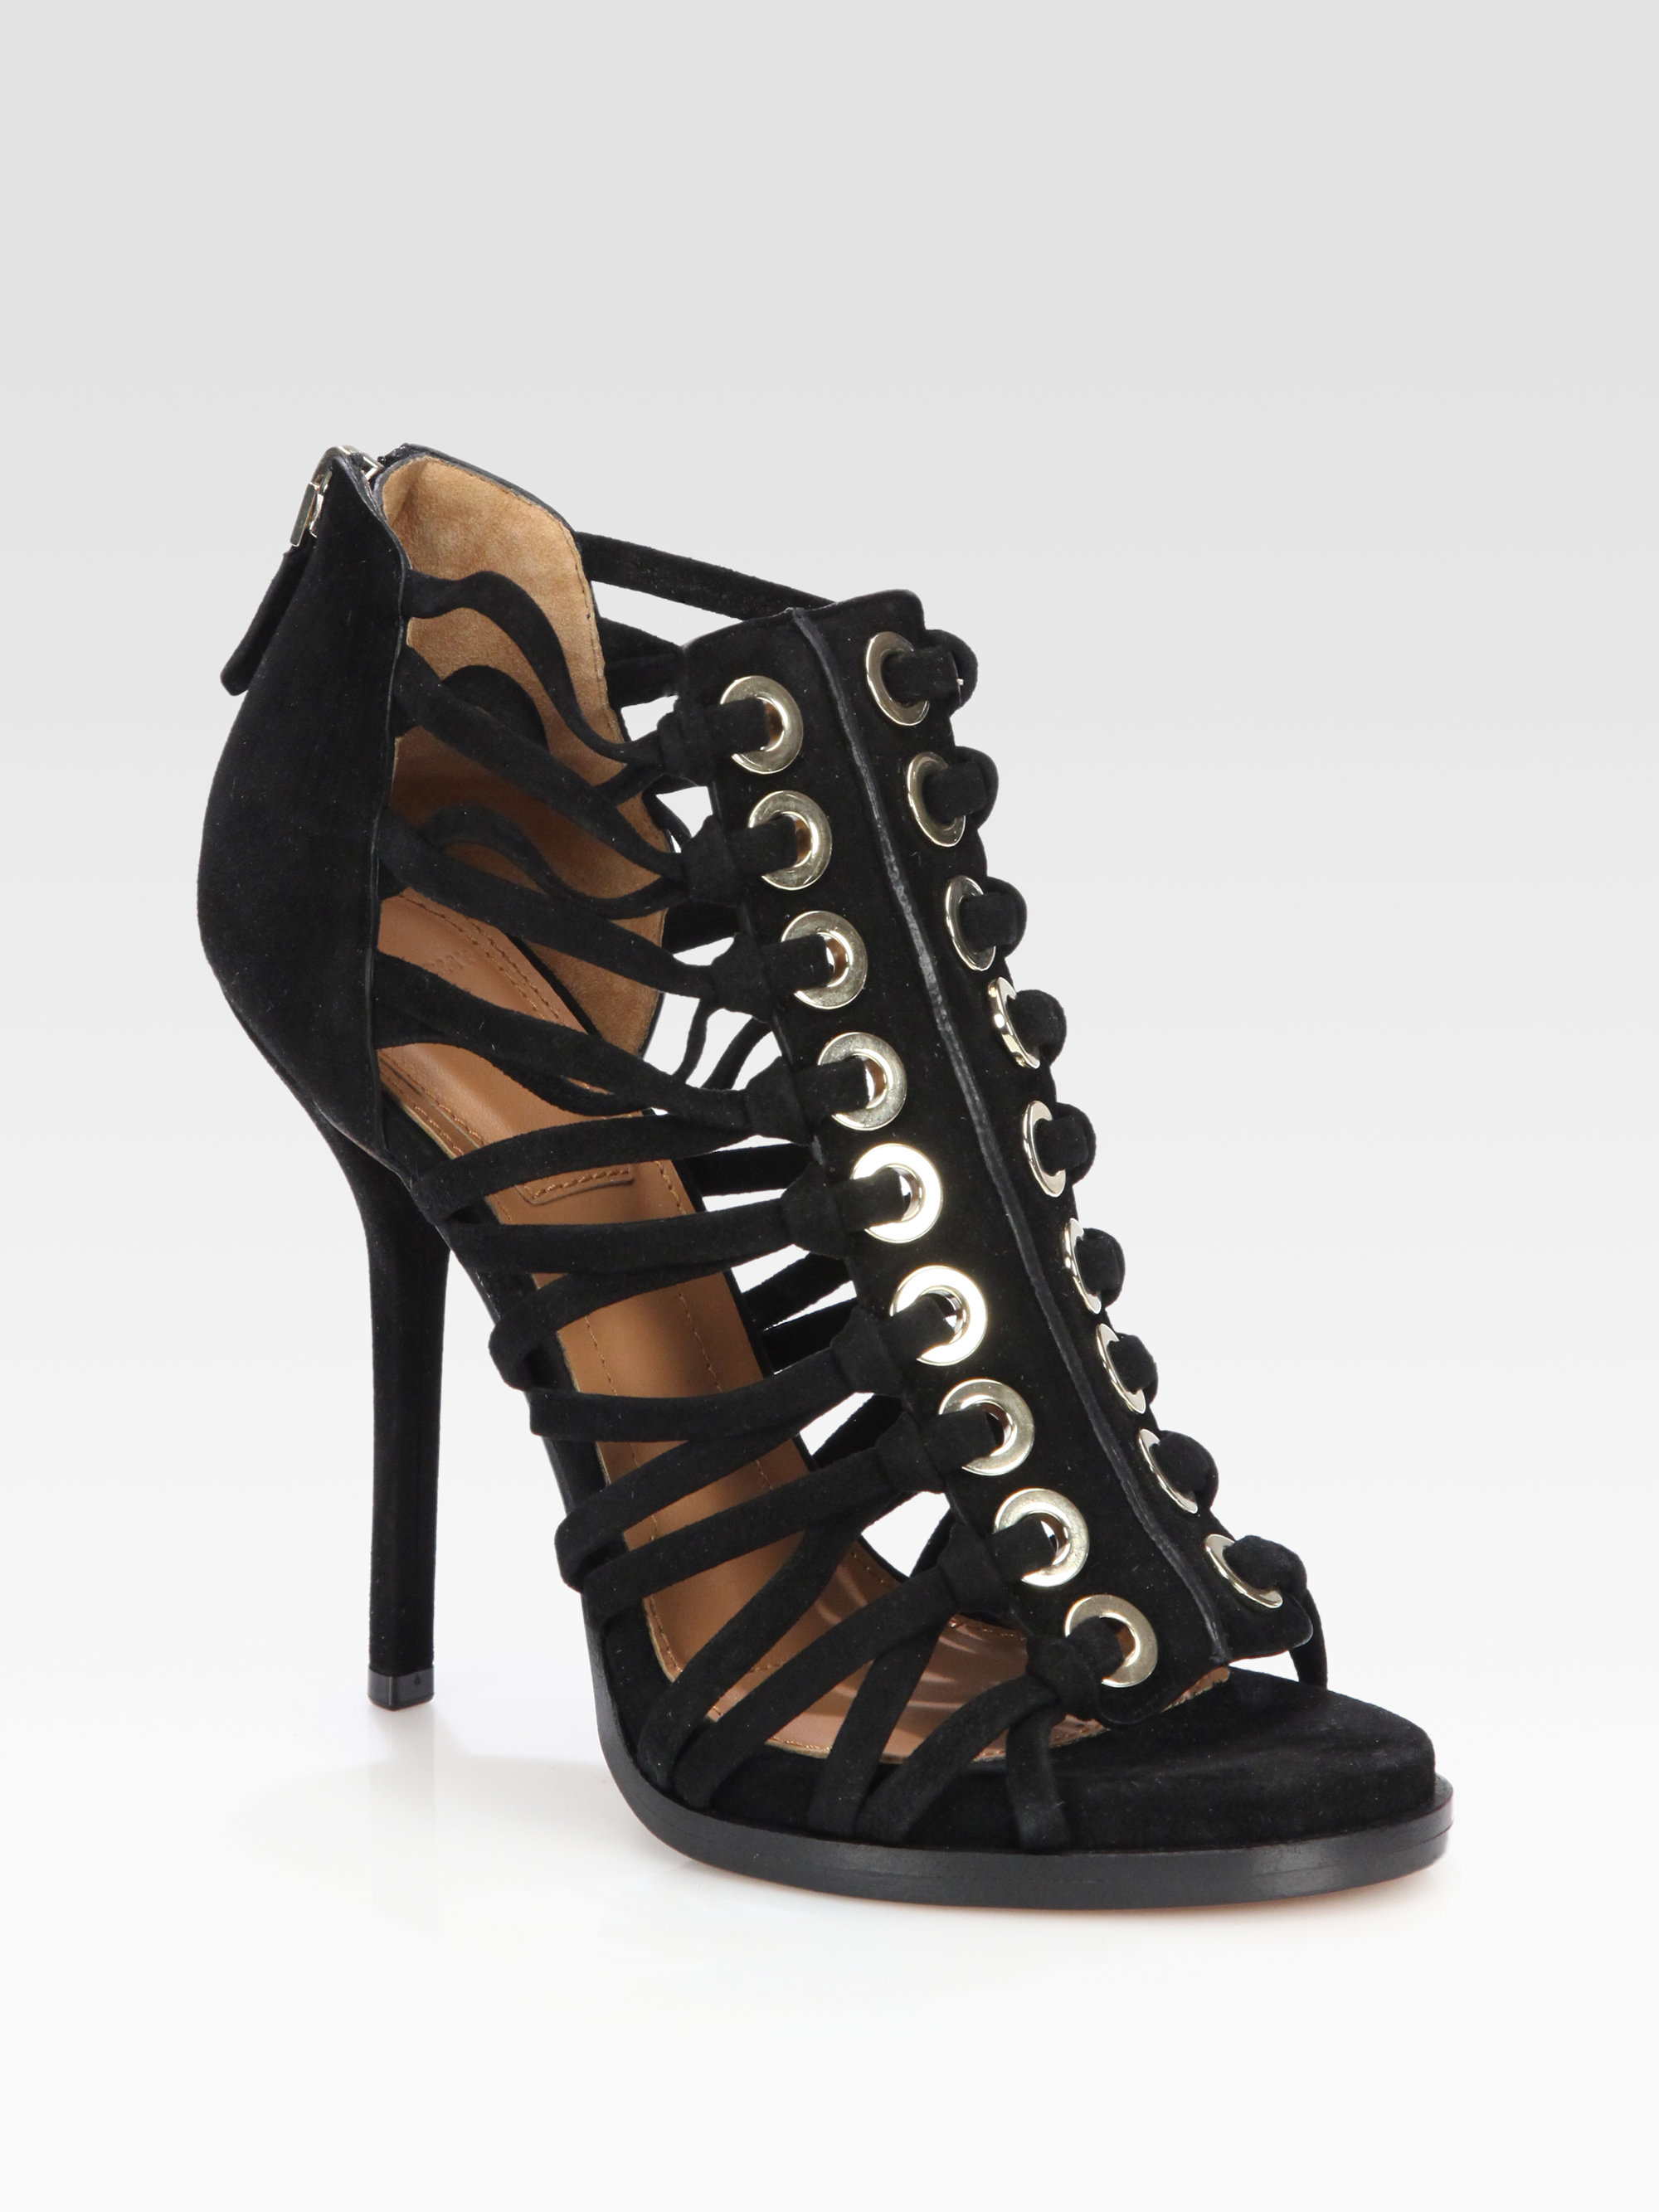 Givenchy Suede Gladiator Platform Sandals in Black | Lyst